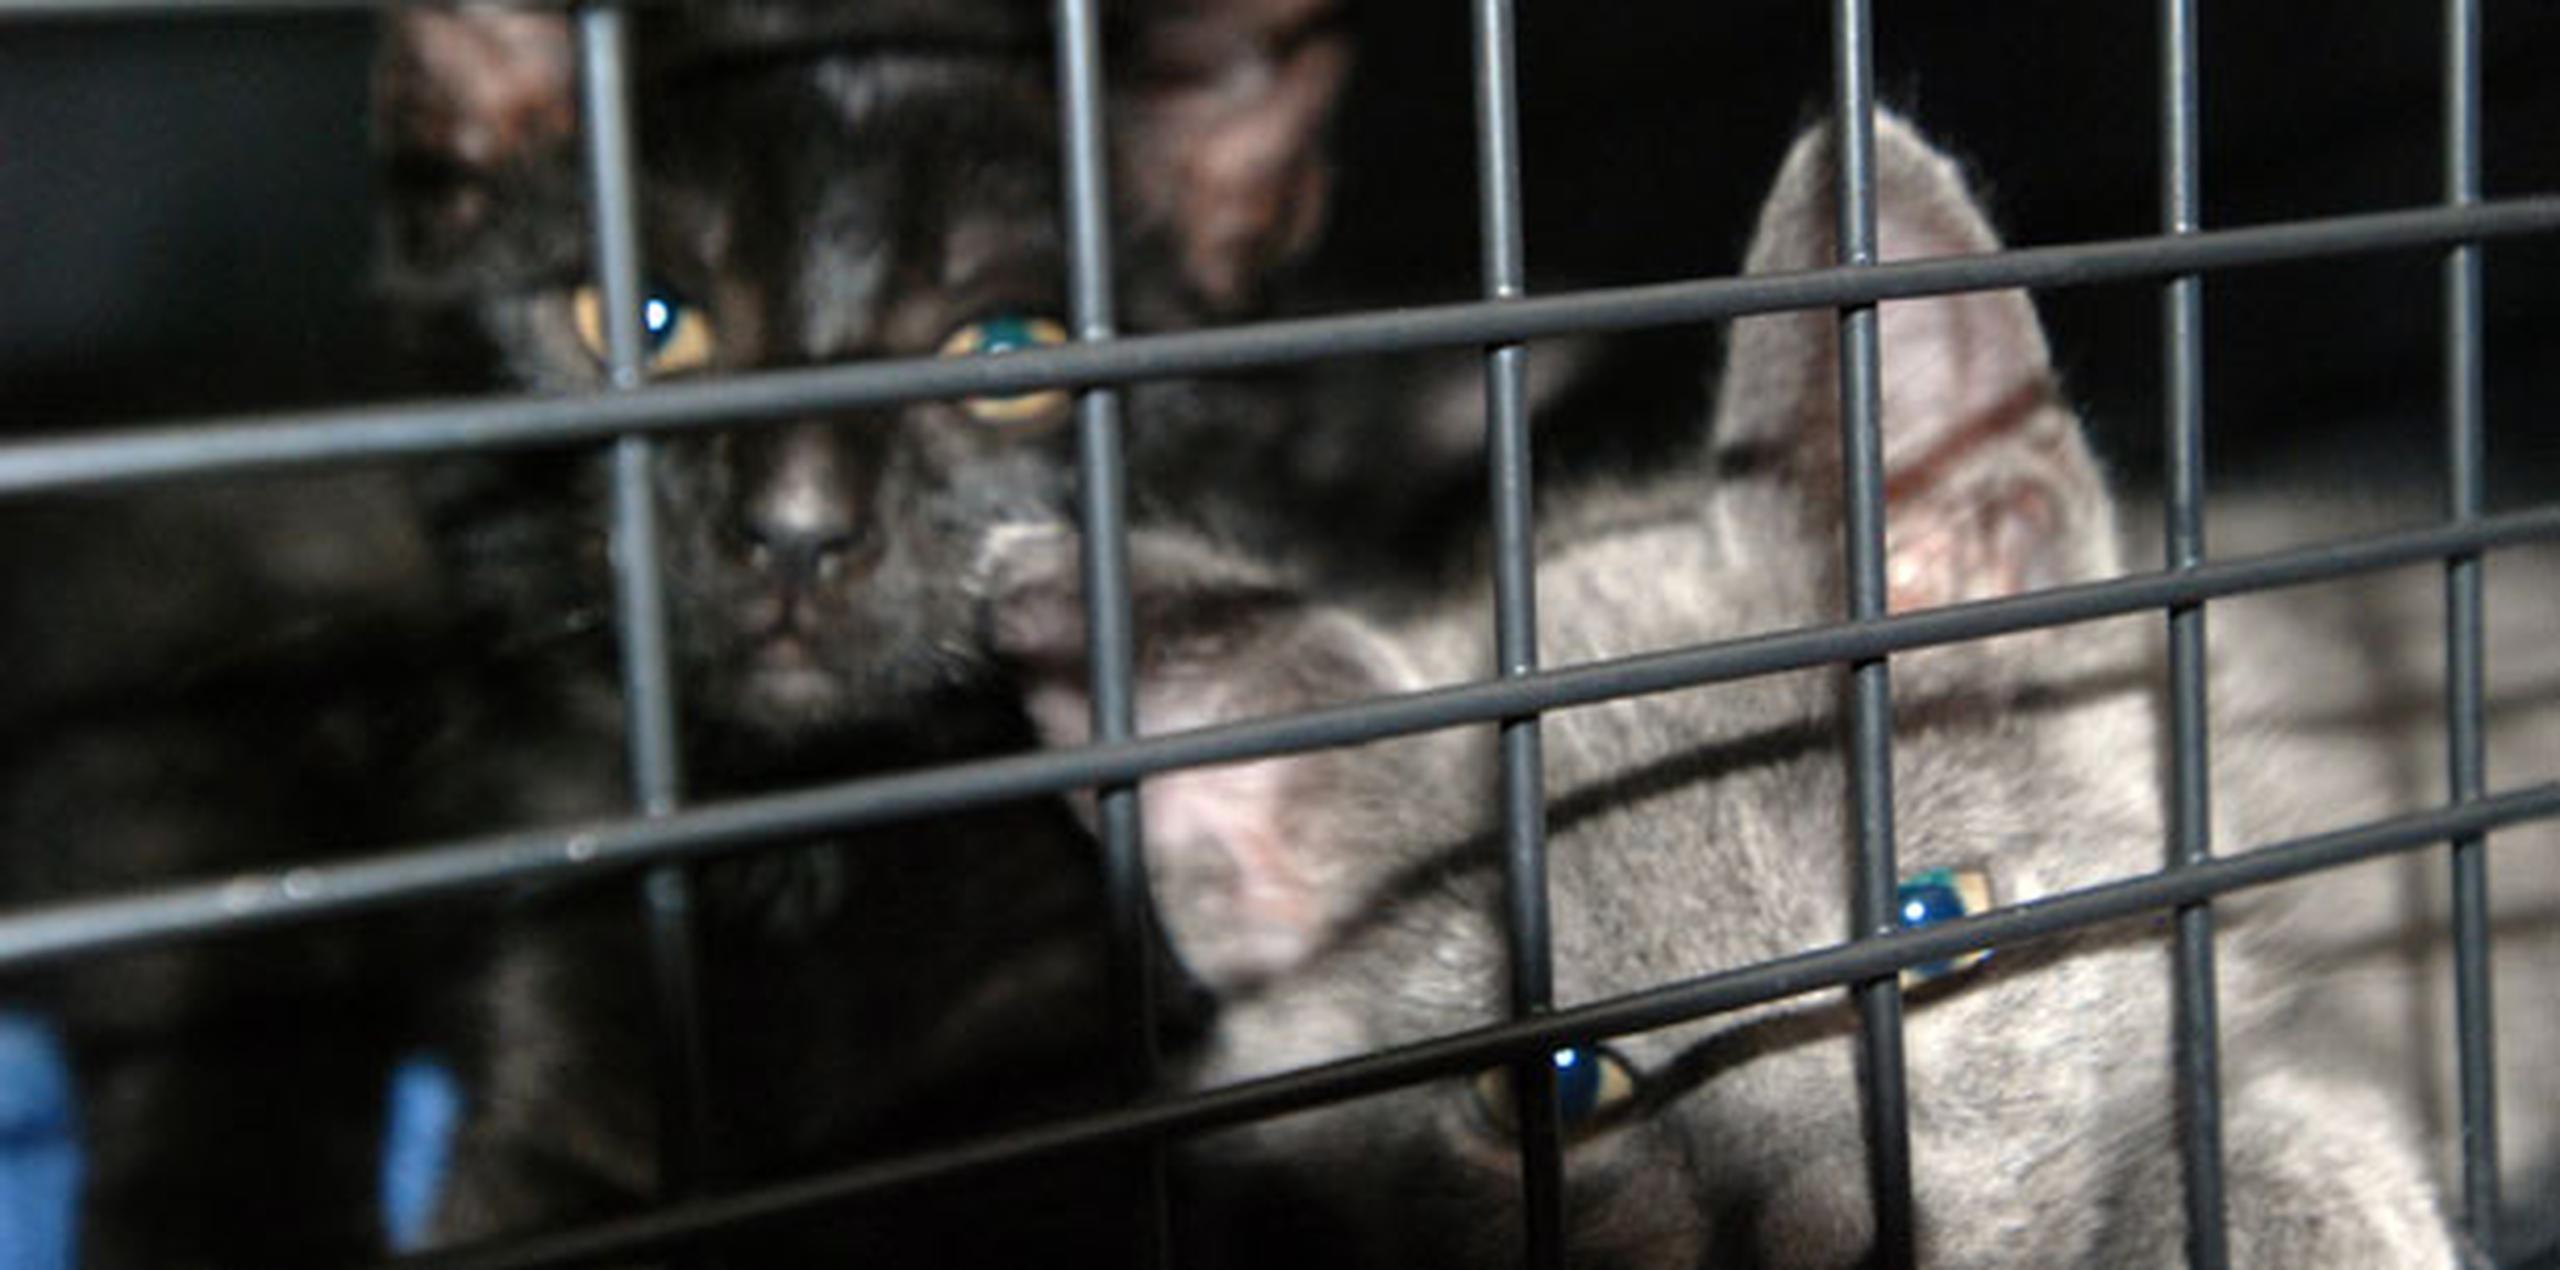 Unos 300,000 gatos vagabundos deambulan solamente en Oahu, de acuerdo con una investigación encargada en 2015 por la organización Humane Societe de Hawaii. (AP Photo/Audrey McAvoy)
